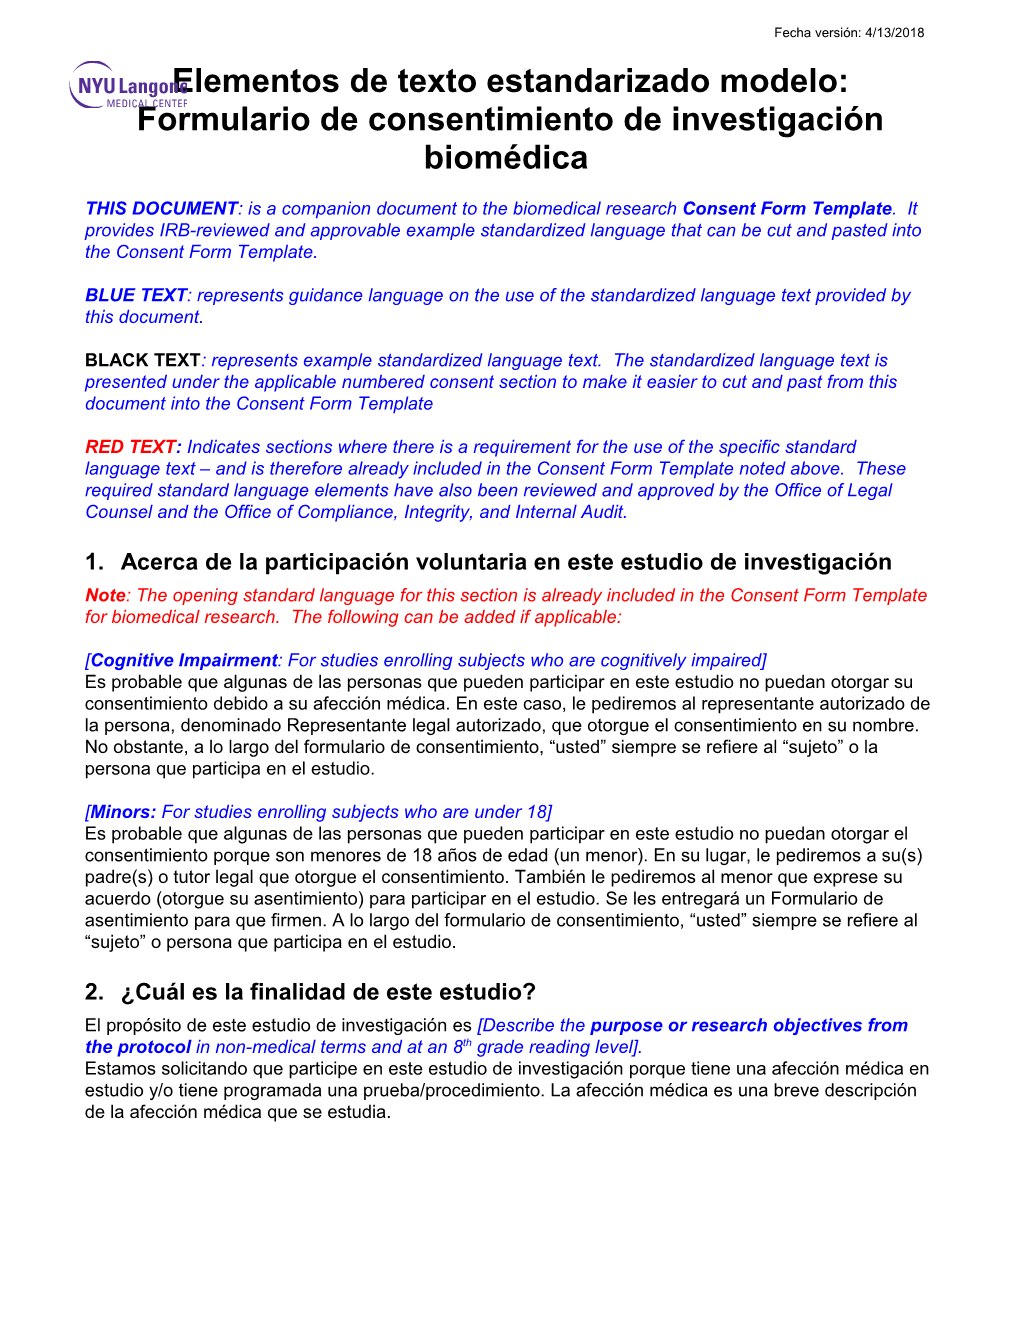 Para Desarrollo Del Formulario De Consentimiento Para Investigación Biomédica Página 10 De10